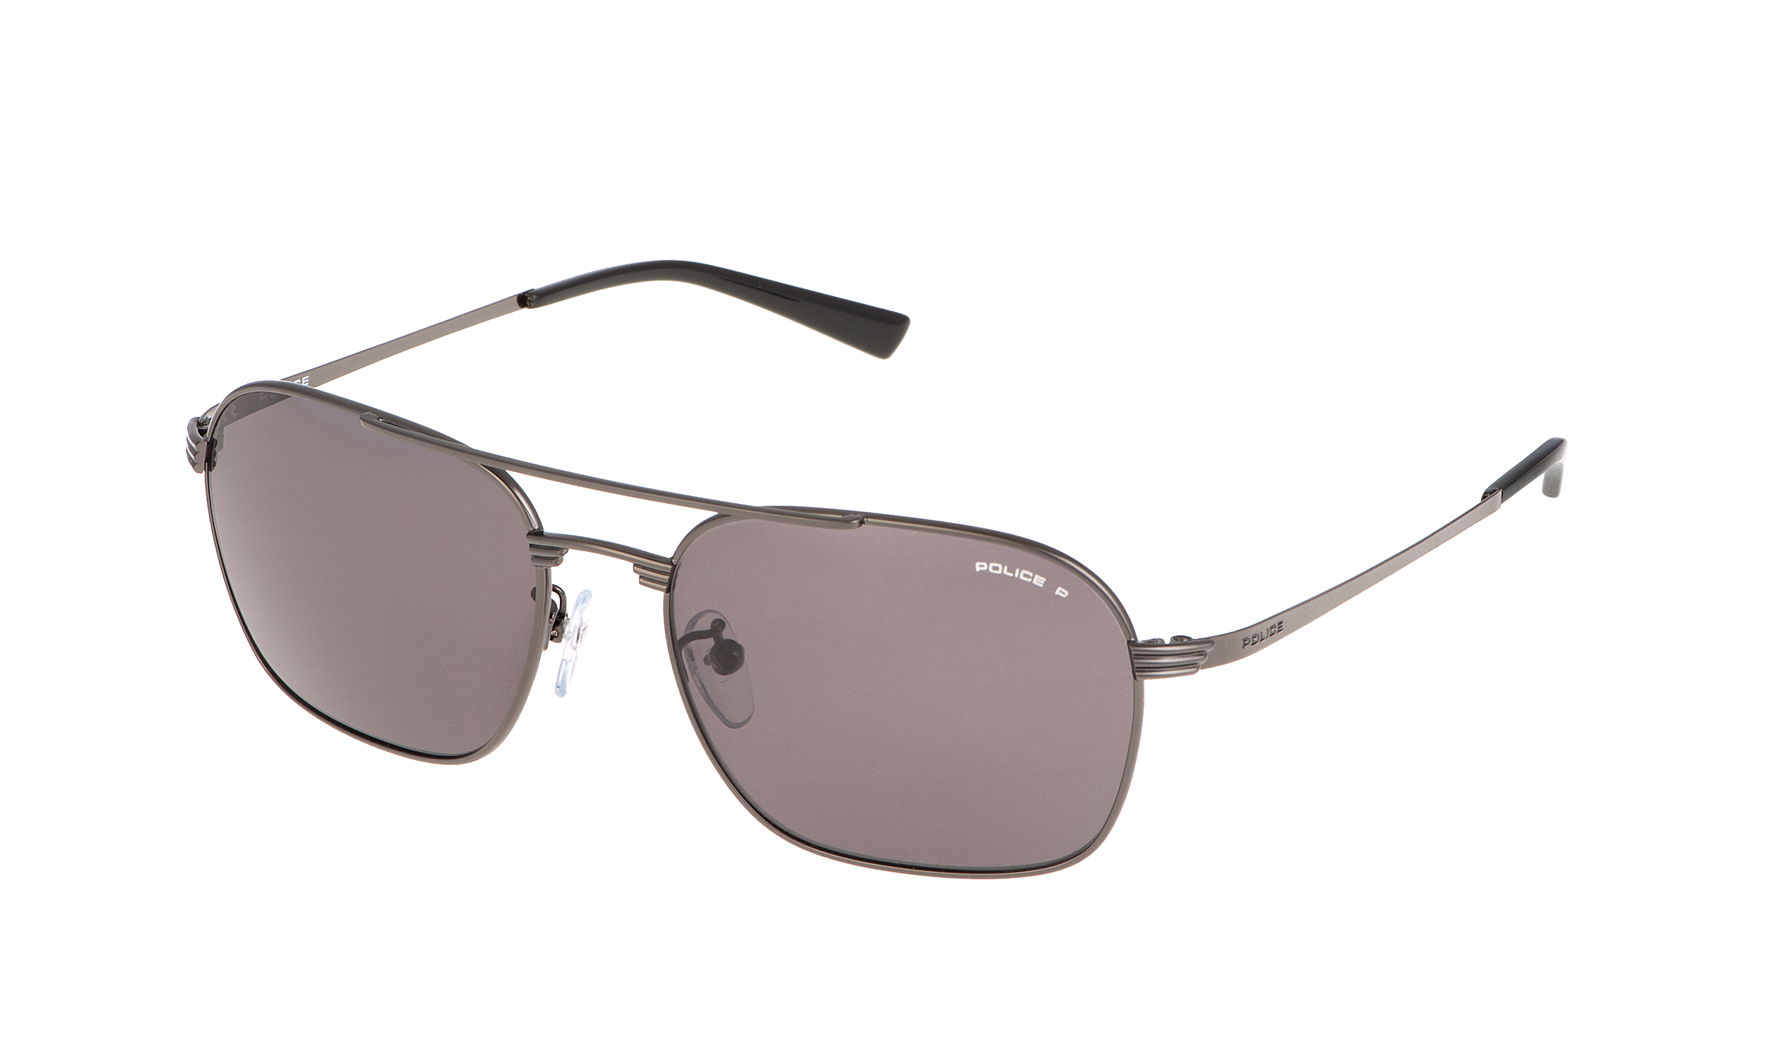 Police S8952  Sunglasses